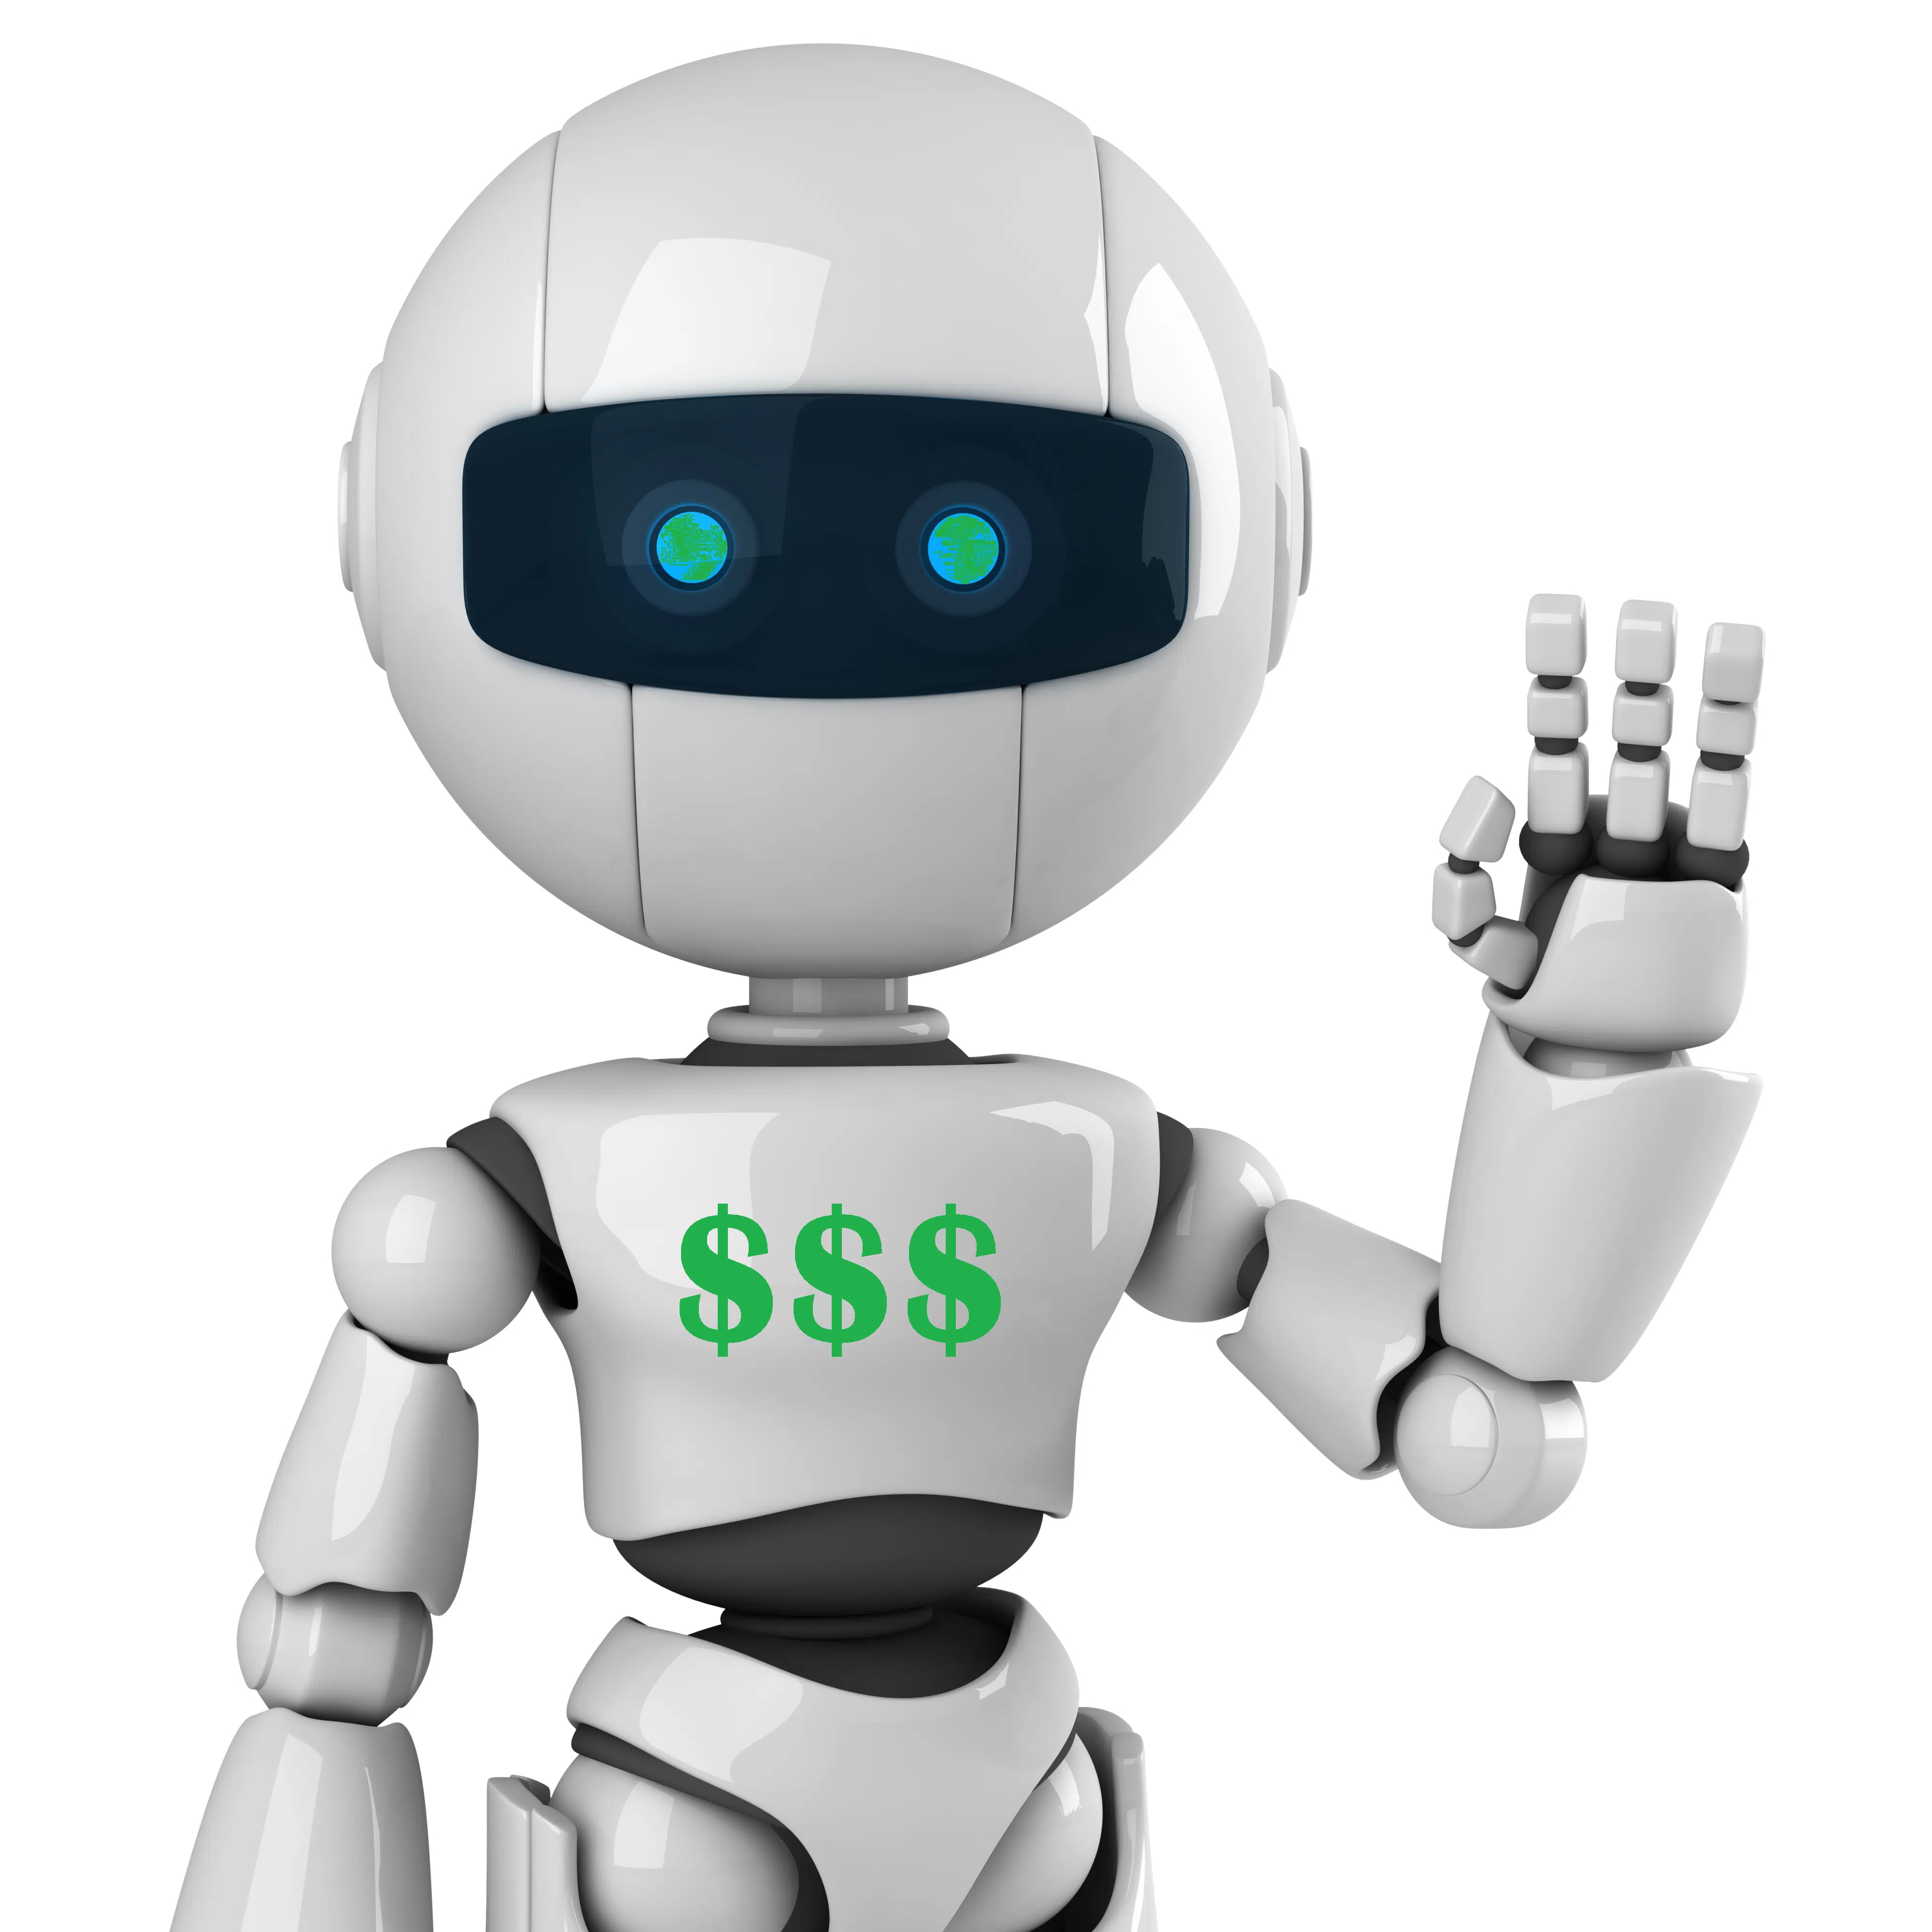 The Robo Investor